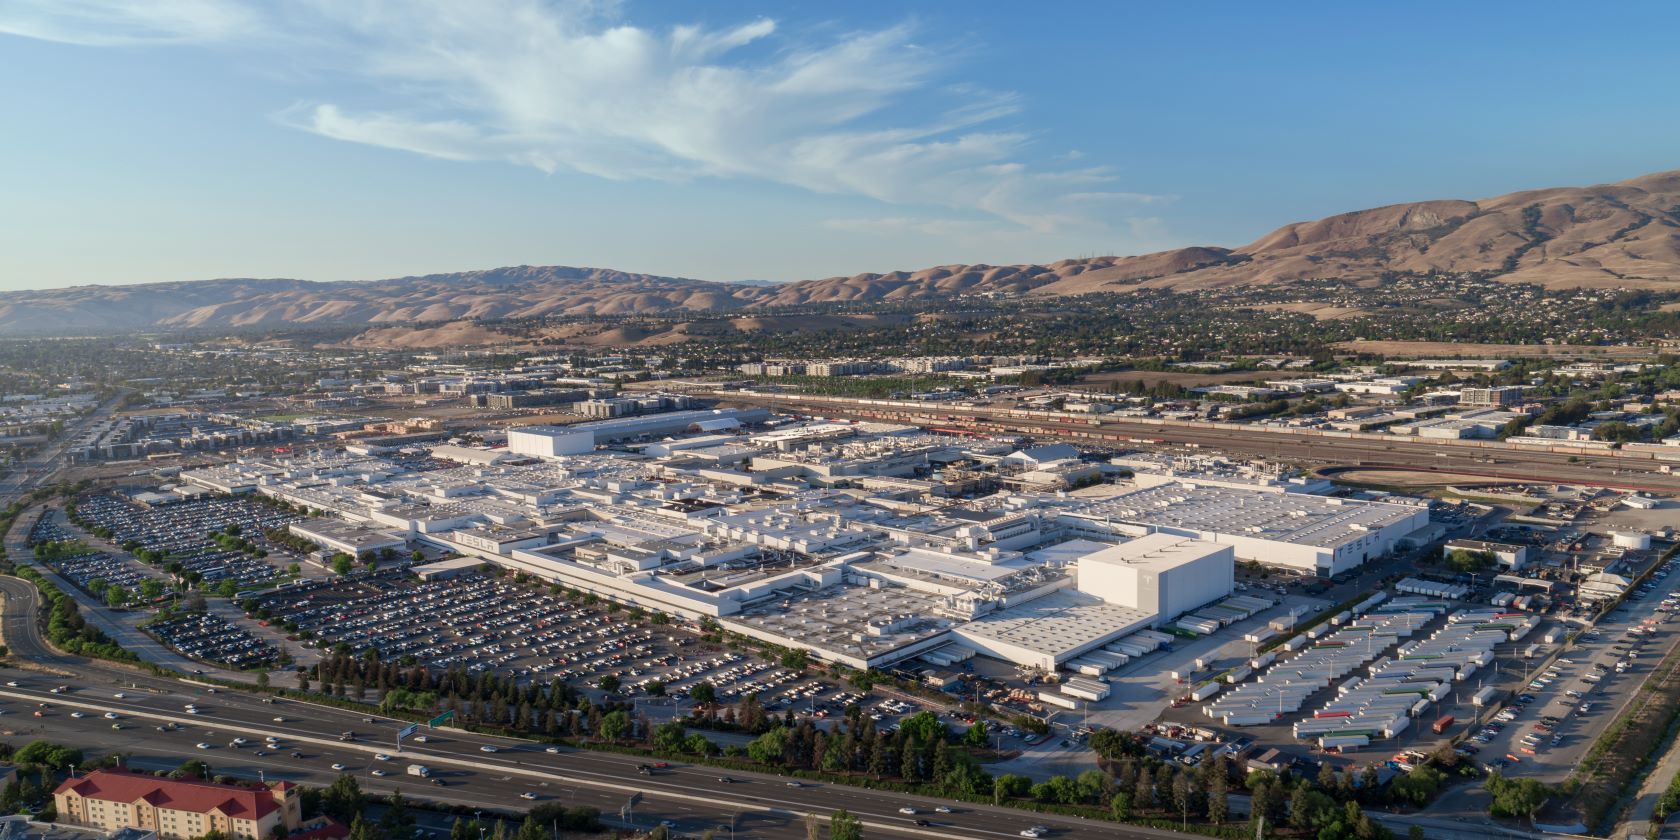 Aerial view of Tesla's Gigafactory